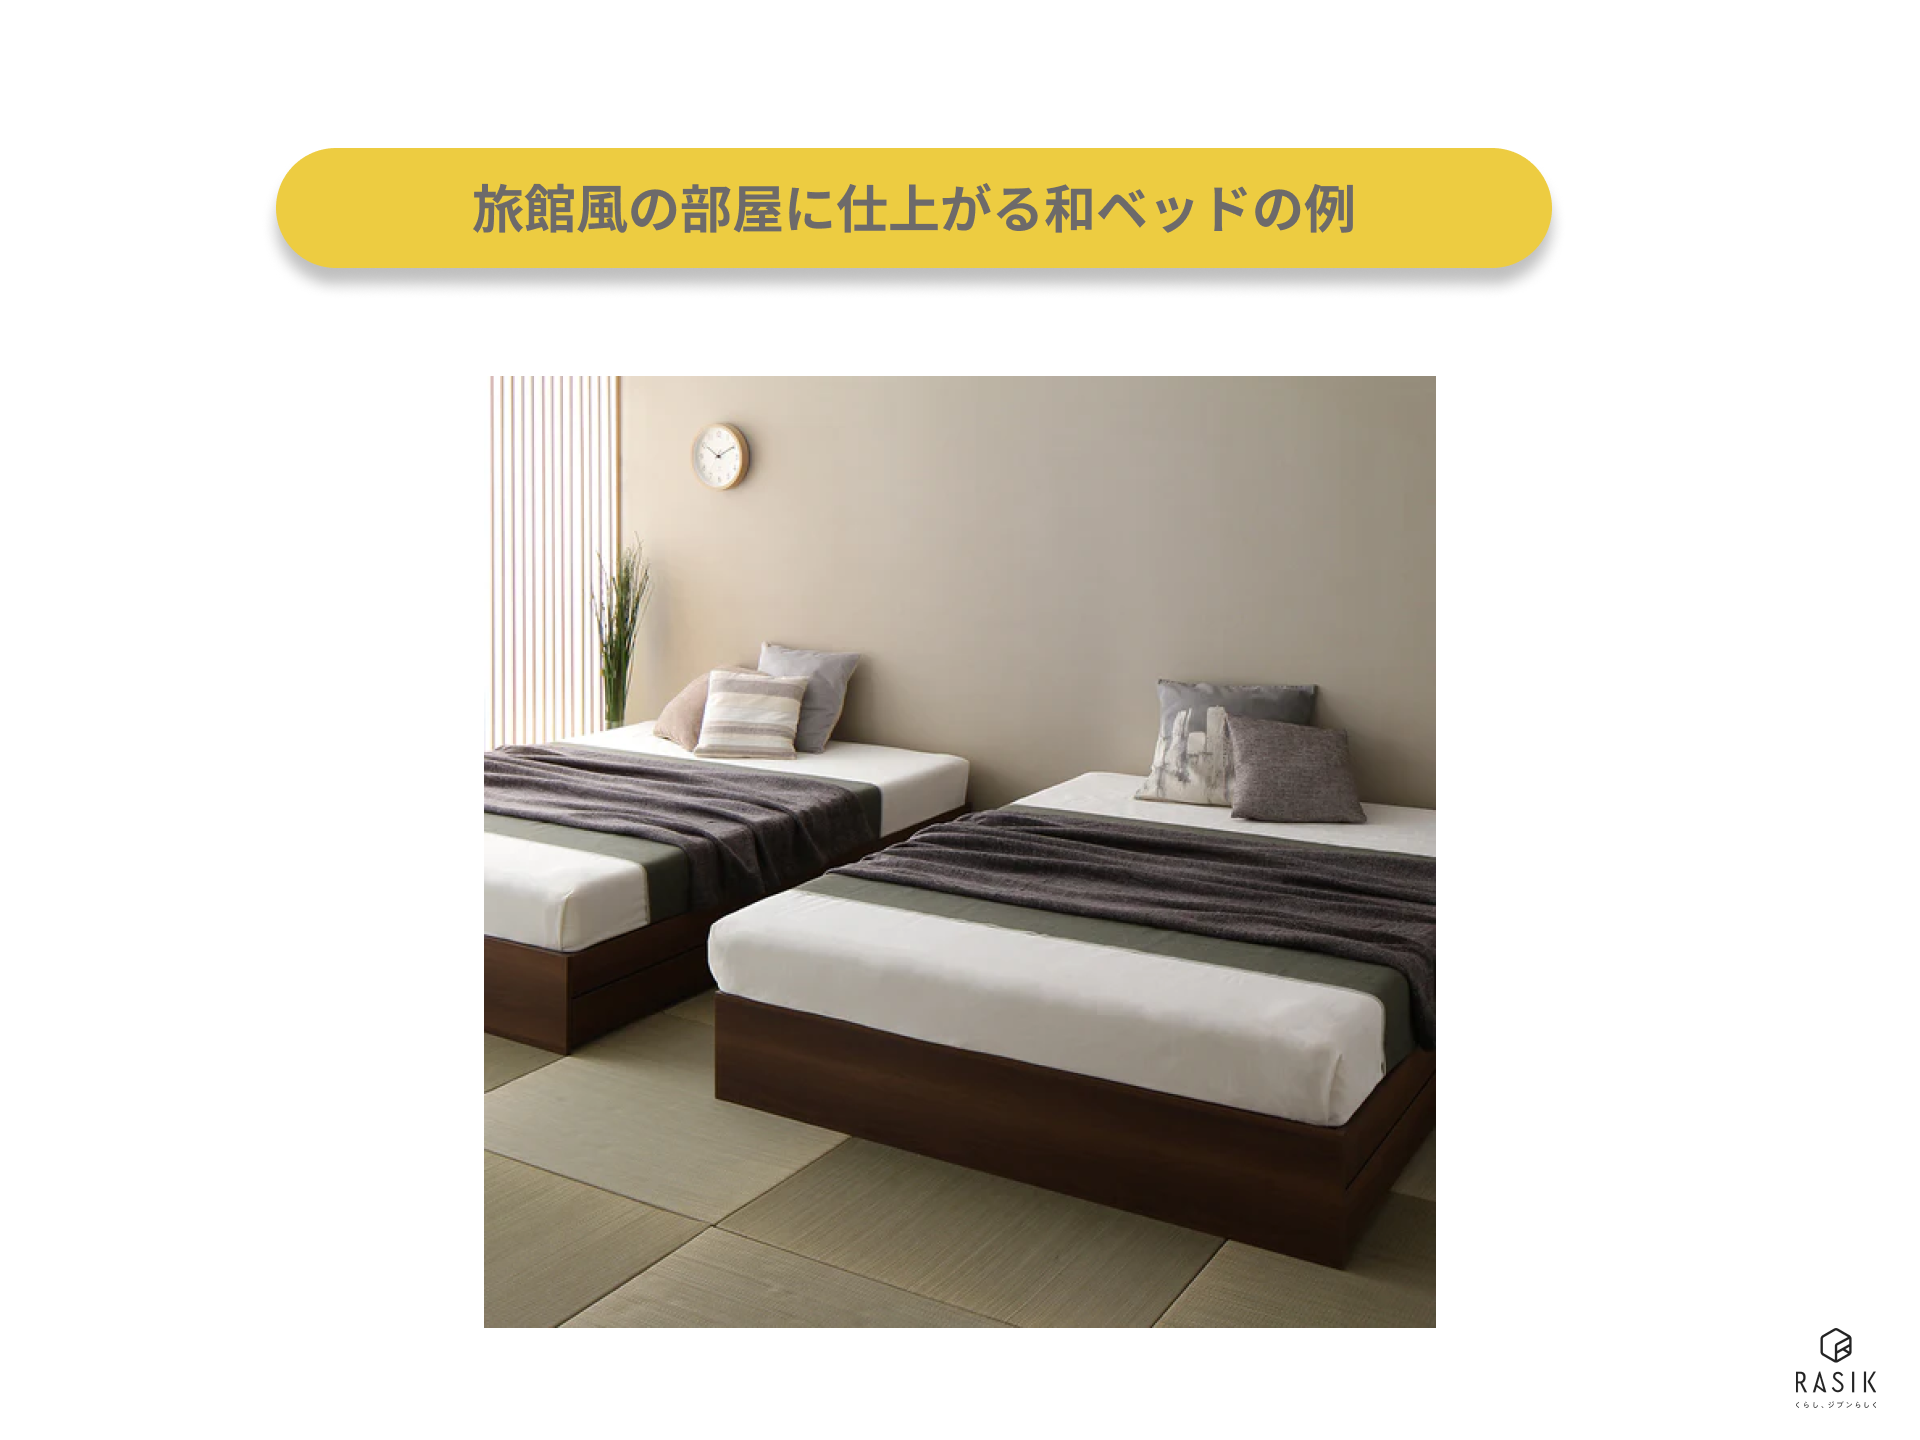 旅館風の部屋に仕上がる和ベッドの例